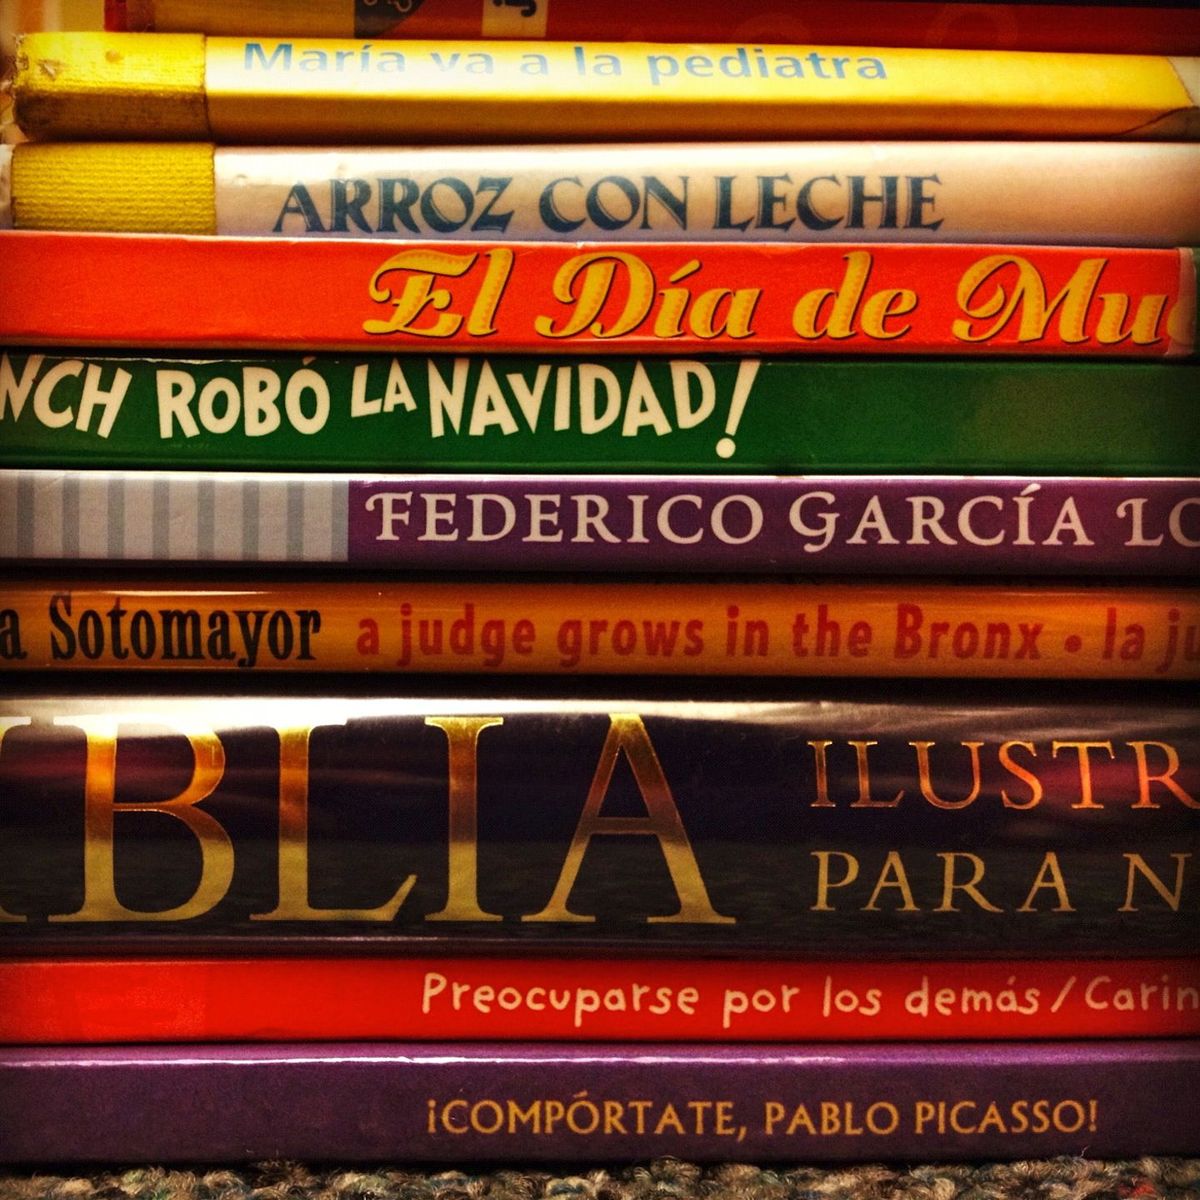 Torrent de libros en espanol descargar utorrent 3.1 2 gratis